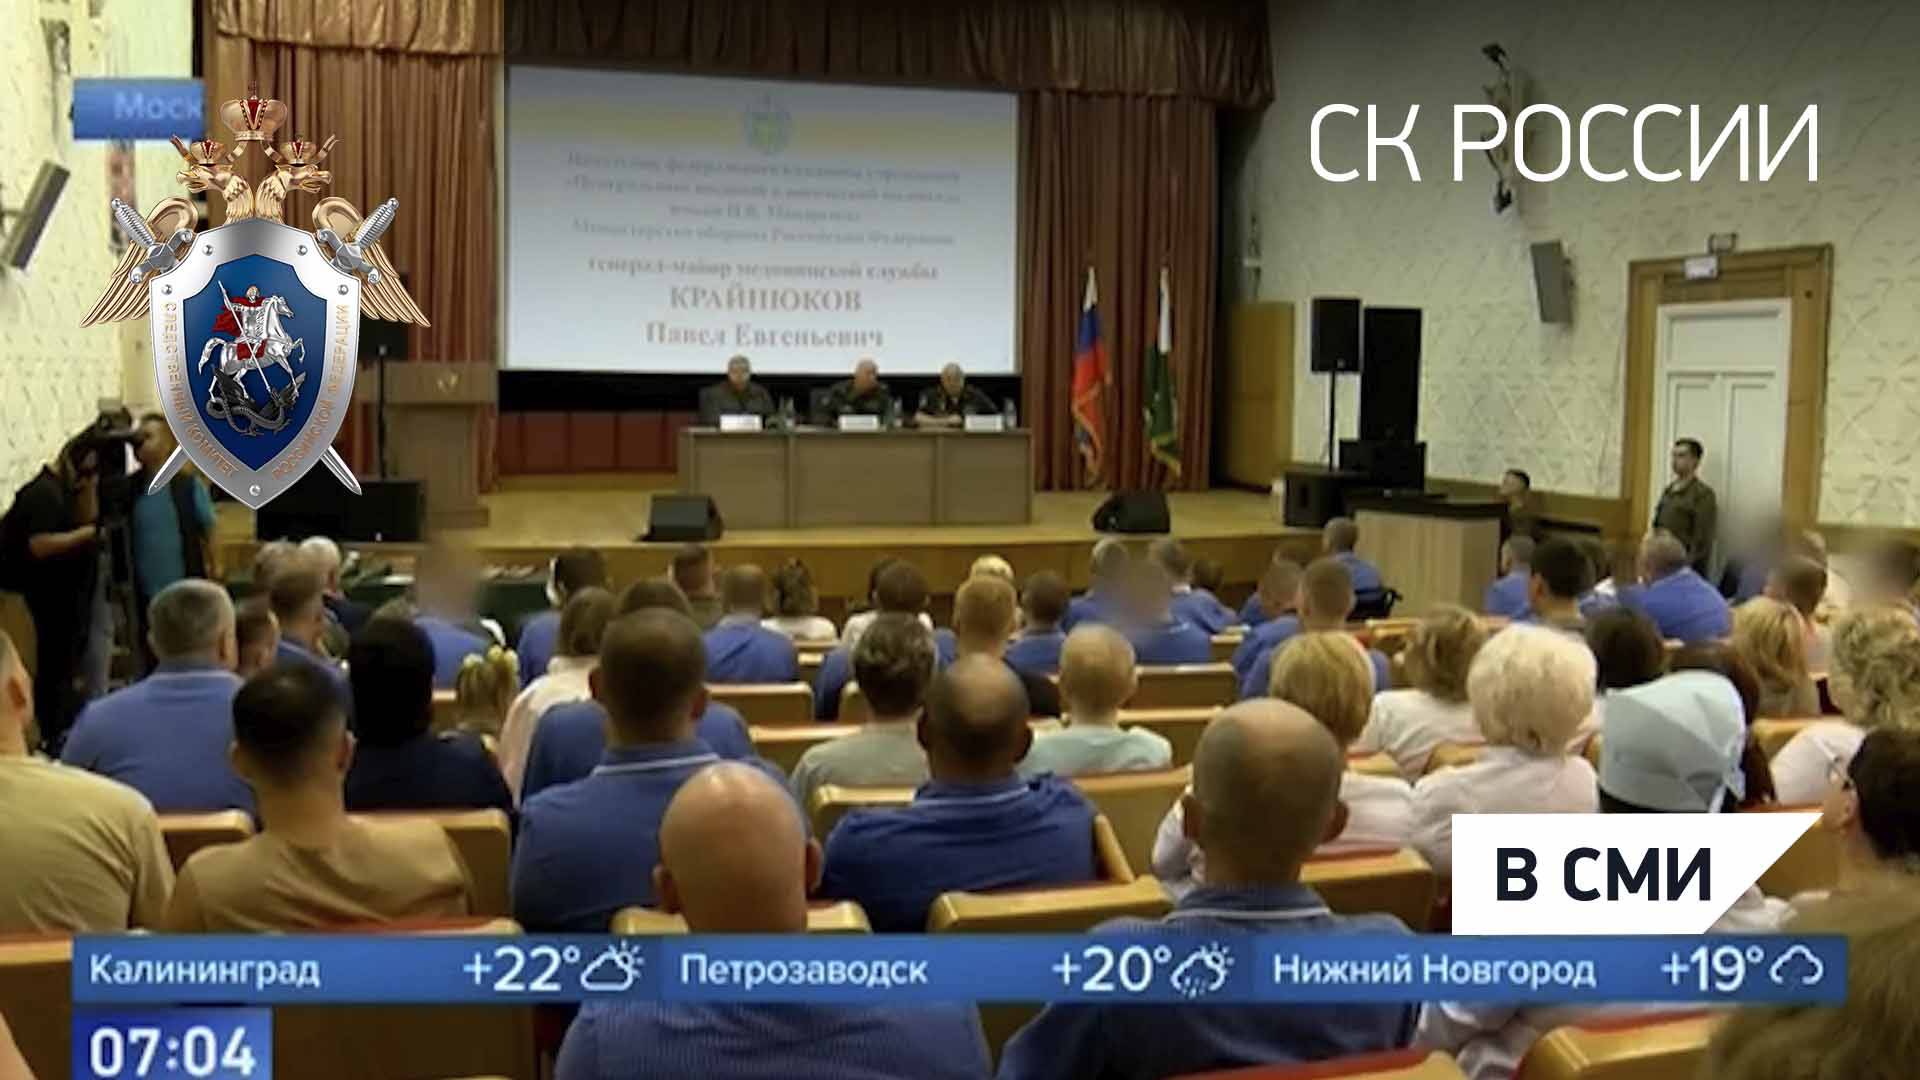 Председатель СК России провёл прием военнослужащих в военном госпитале в сюжете Первого канала